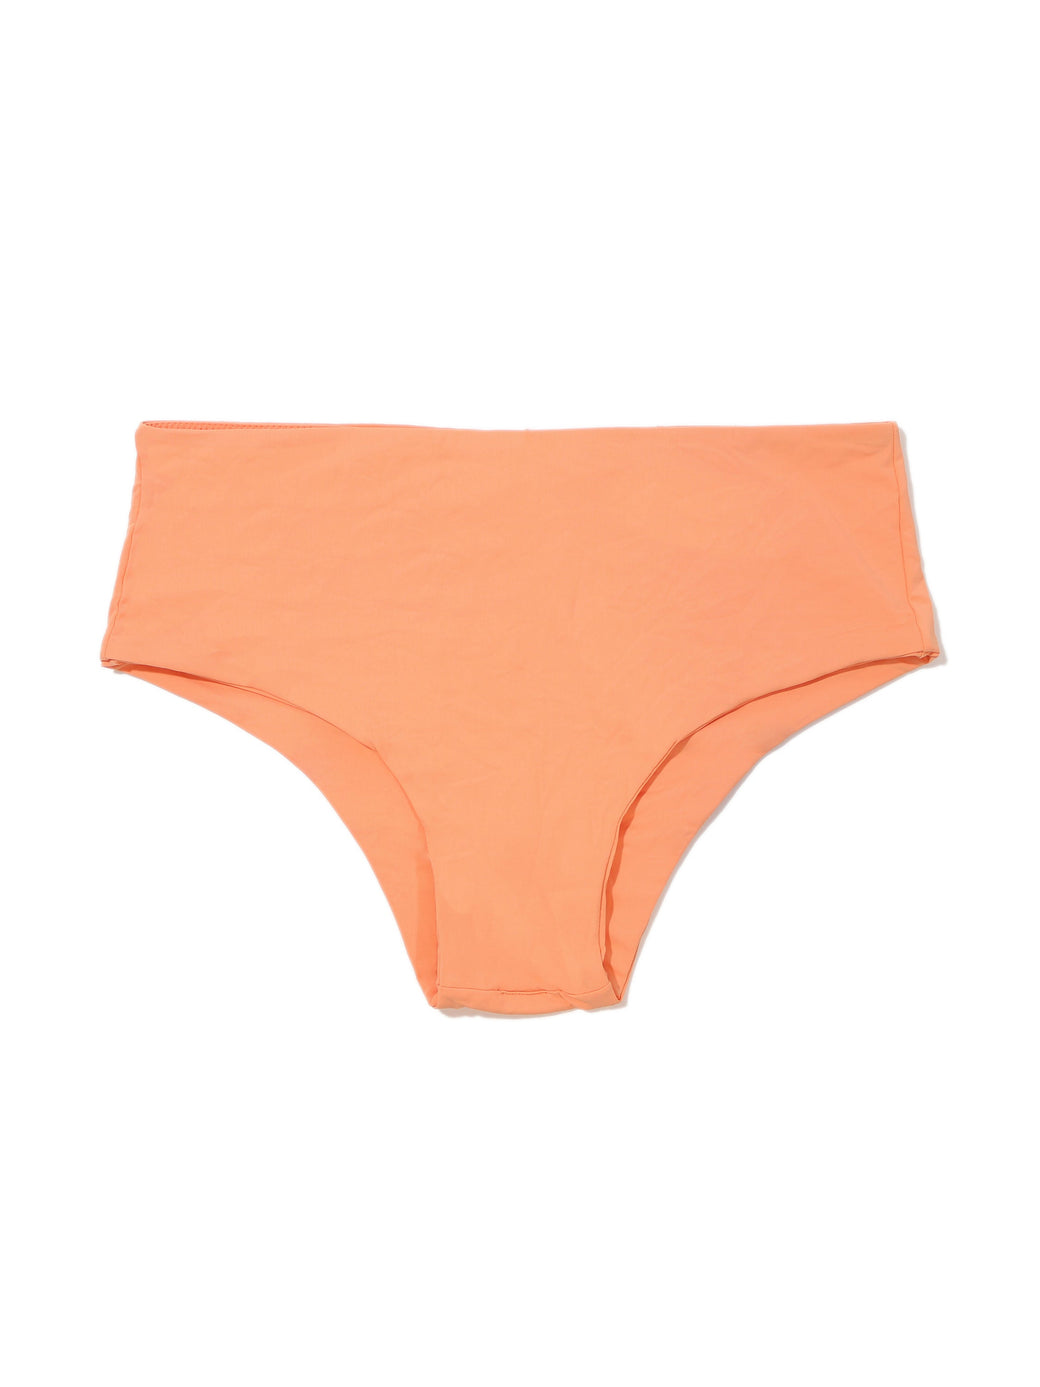 Boyshort Swimsuit Bottom Florence Orange